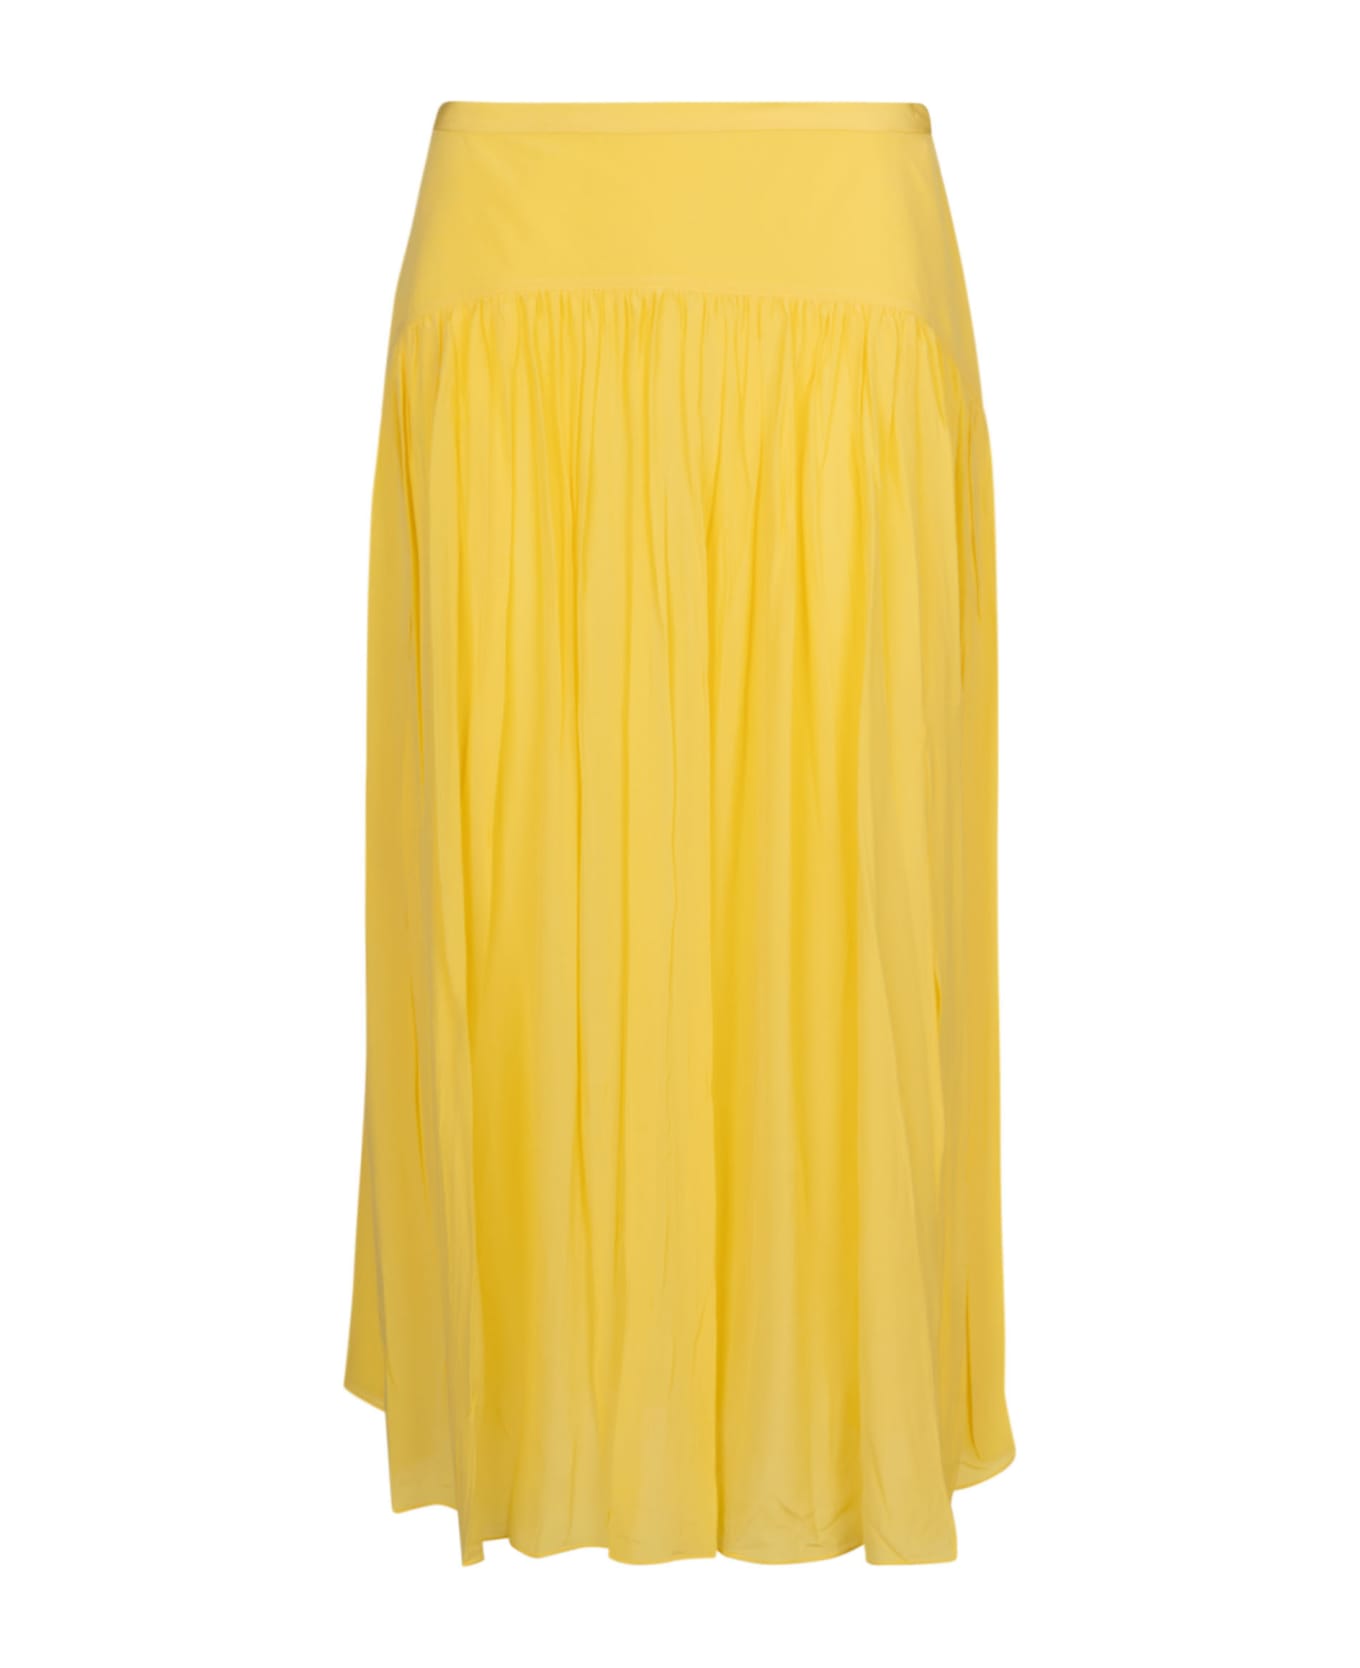 Marni Pleated Skirt - Lemon 